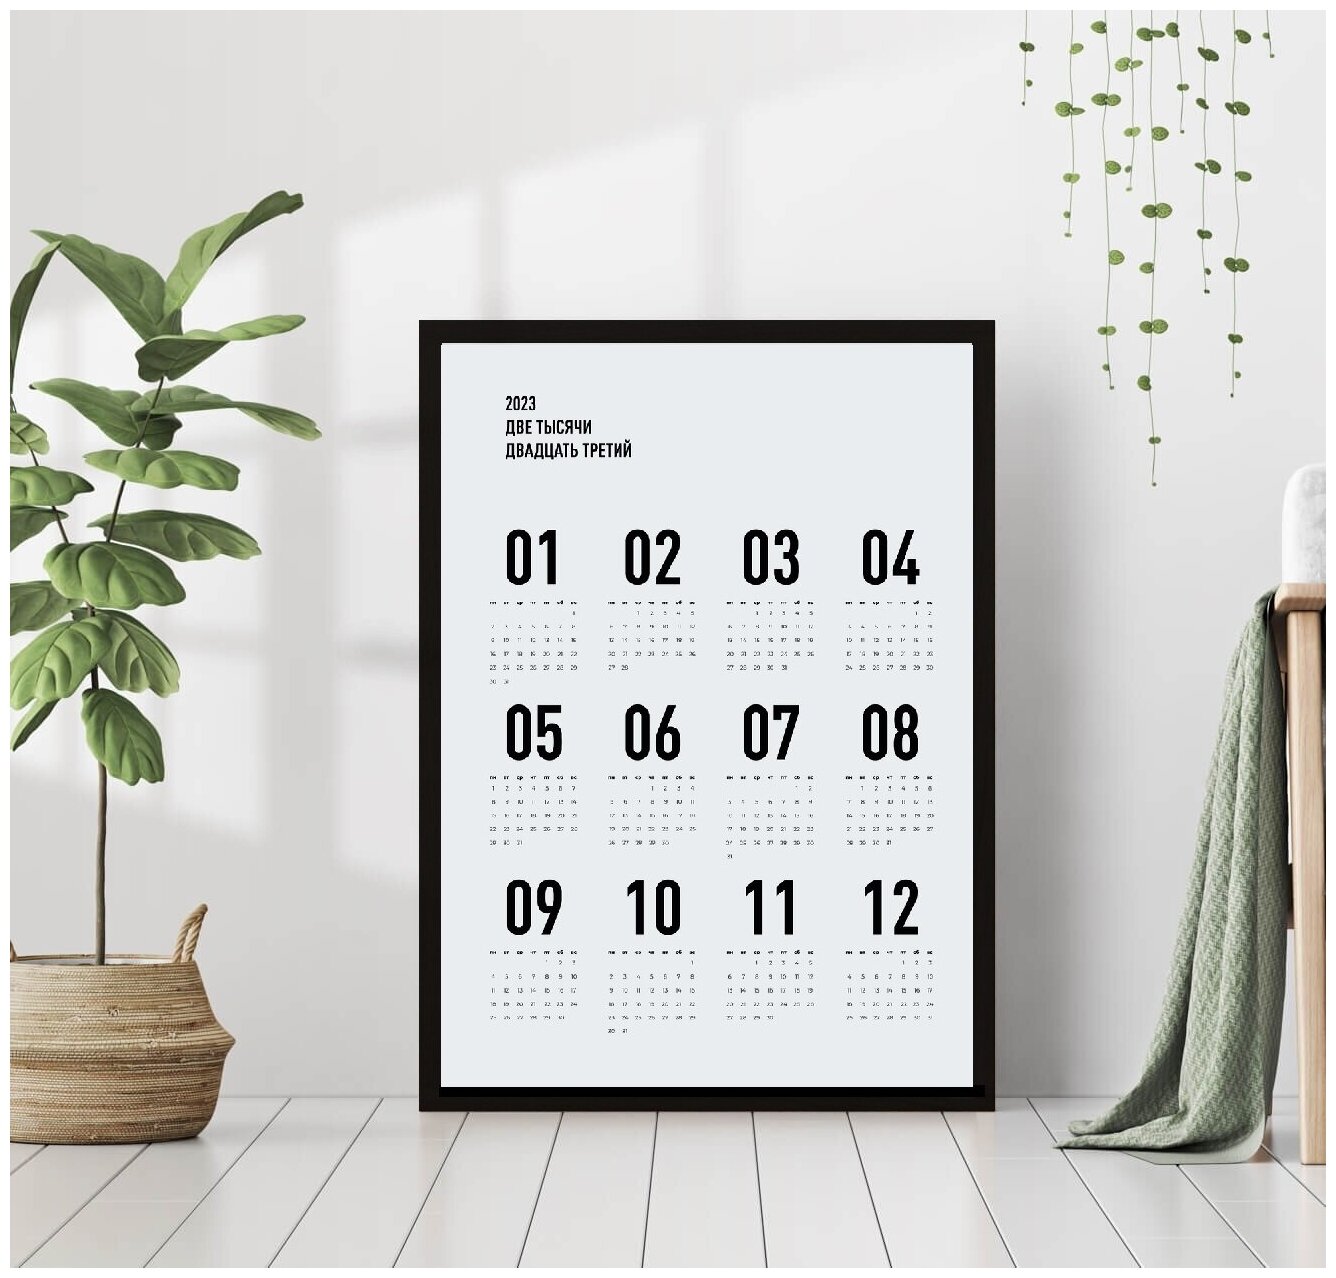 Постер "Календарь 2023 в современном стиле минимализм" 40 * 50 в черной раме / Картина / Постеры для интерьера / Плакаты / Рамка